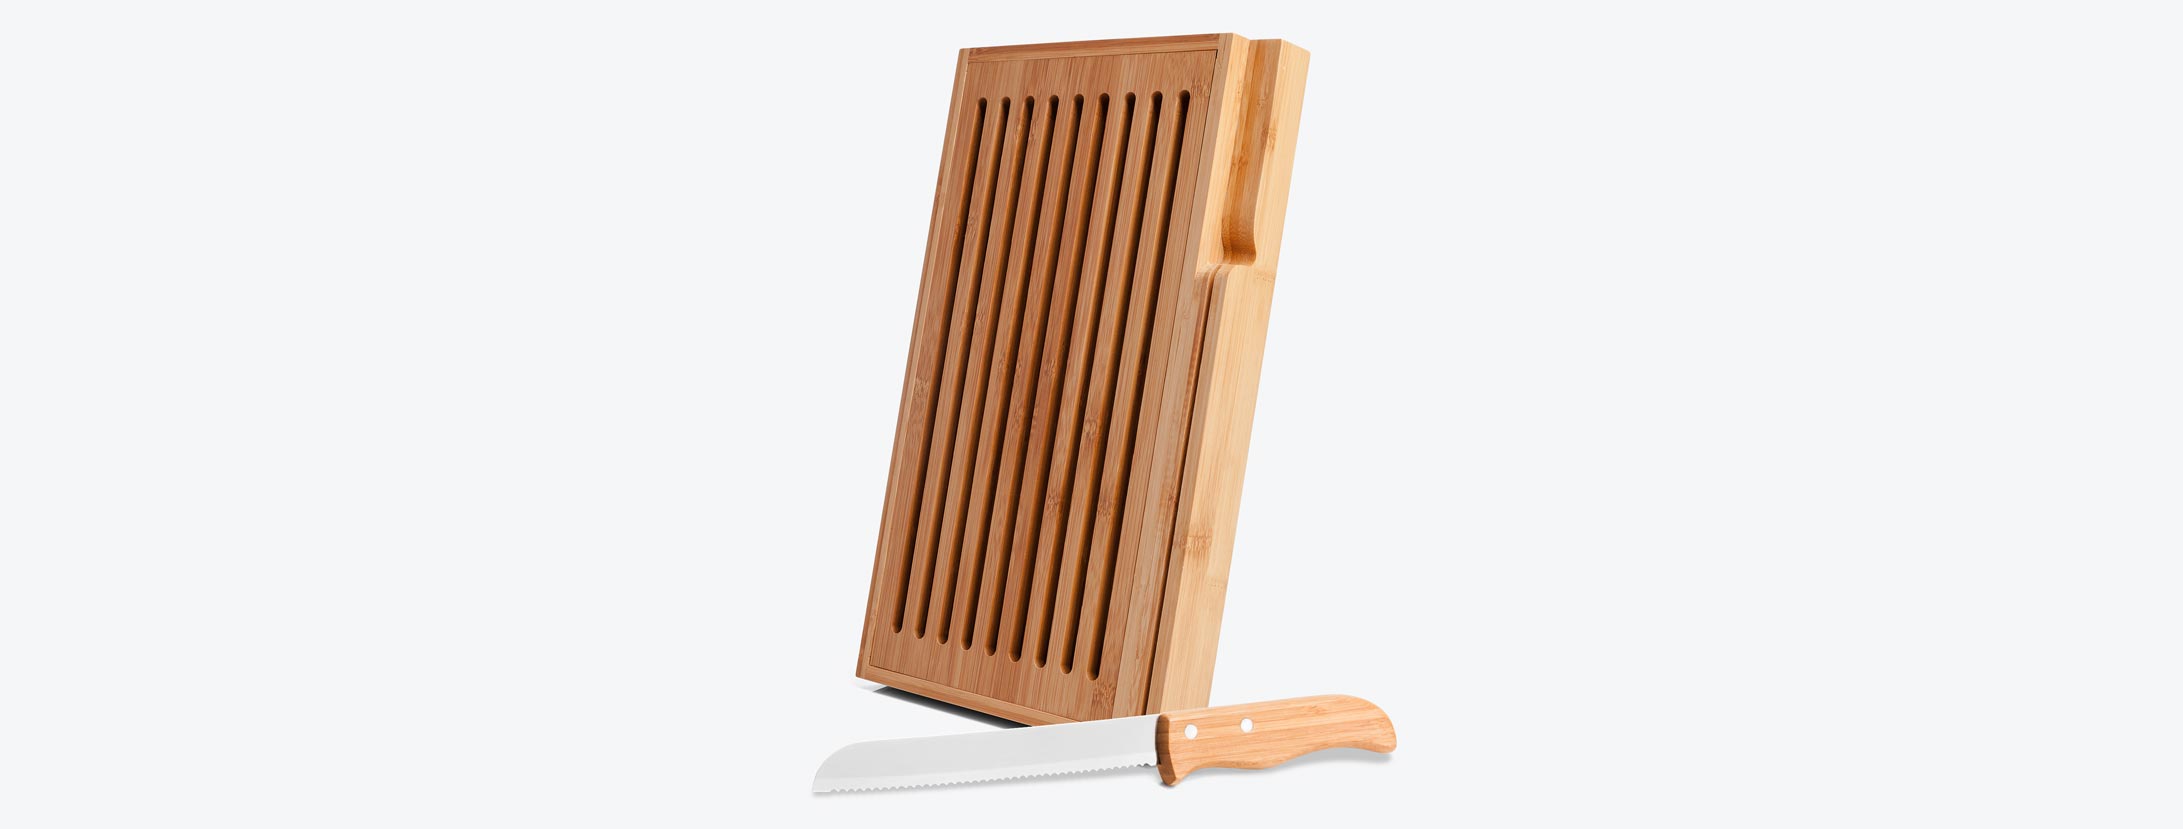 Confeccionada em Bambu, possui grelha removível para melhor recolher as migalhas e uma faca 7” para pão com cabo em Bambu e lâmina em Aço Inox com rebites resistentes, que se encaixa perfeitamente na lateral da base.